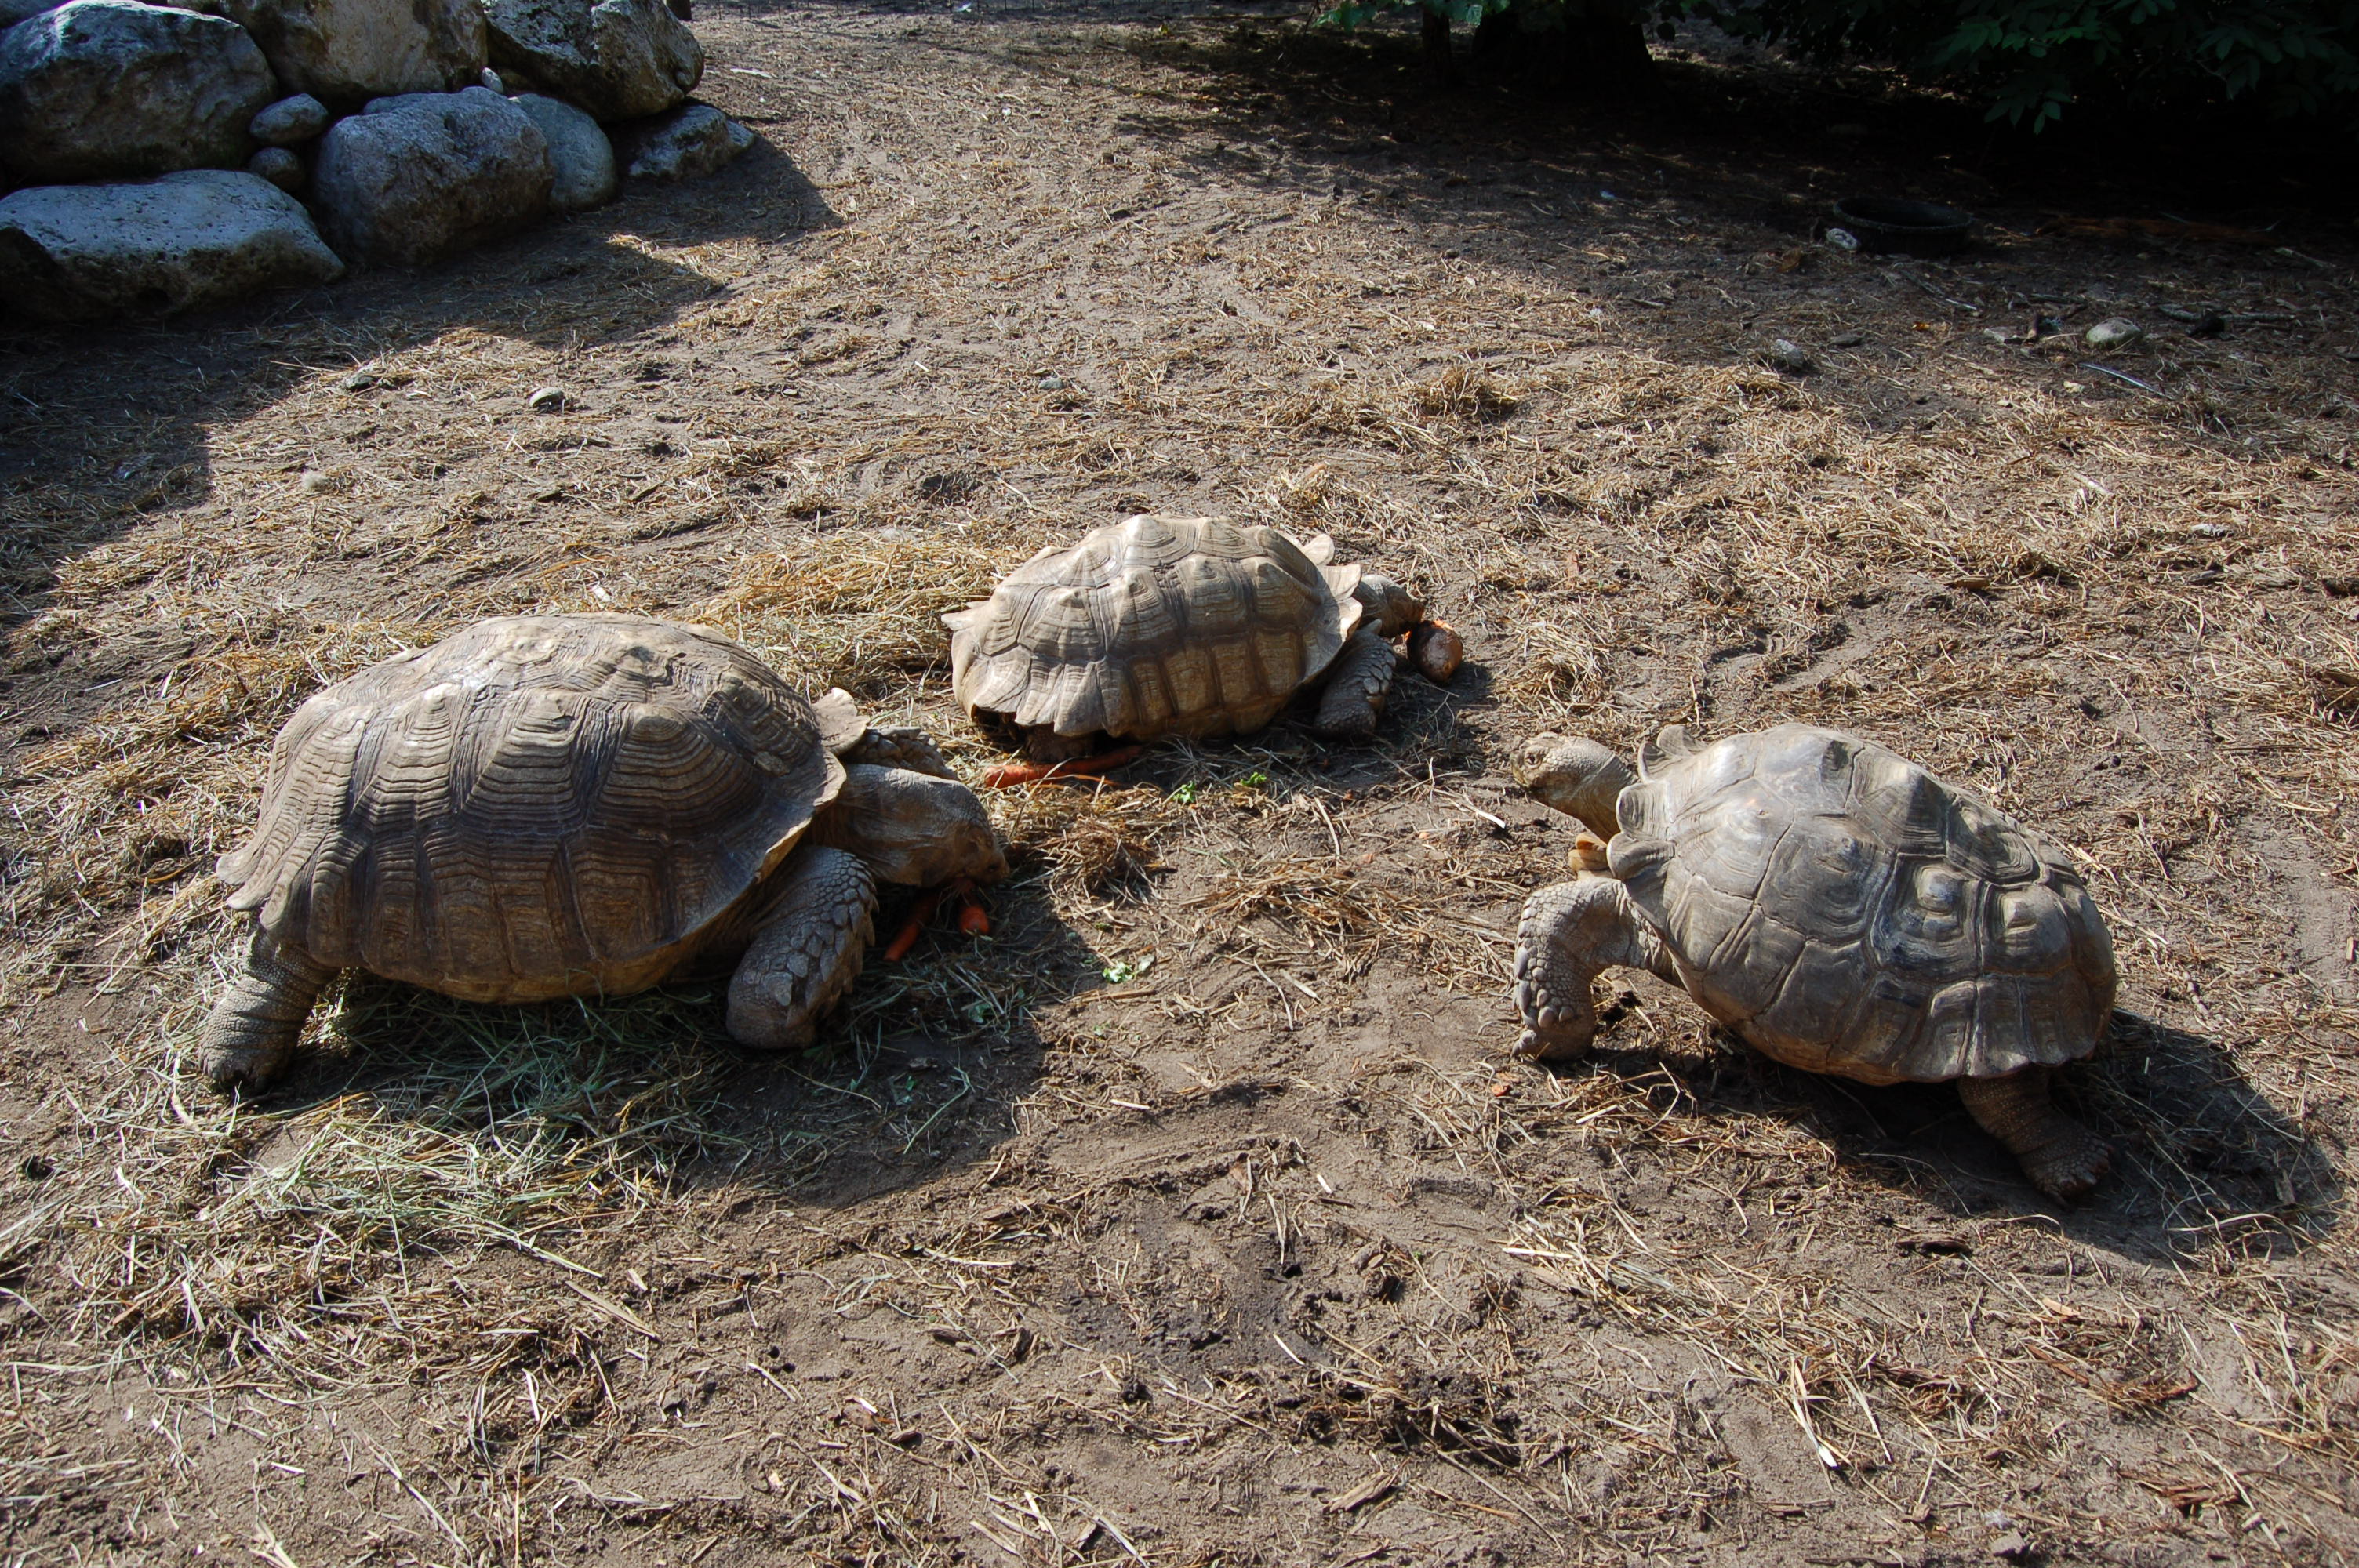 GarLyn Zoo 3 Tortoises